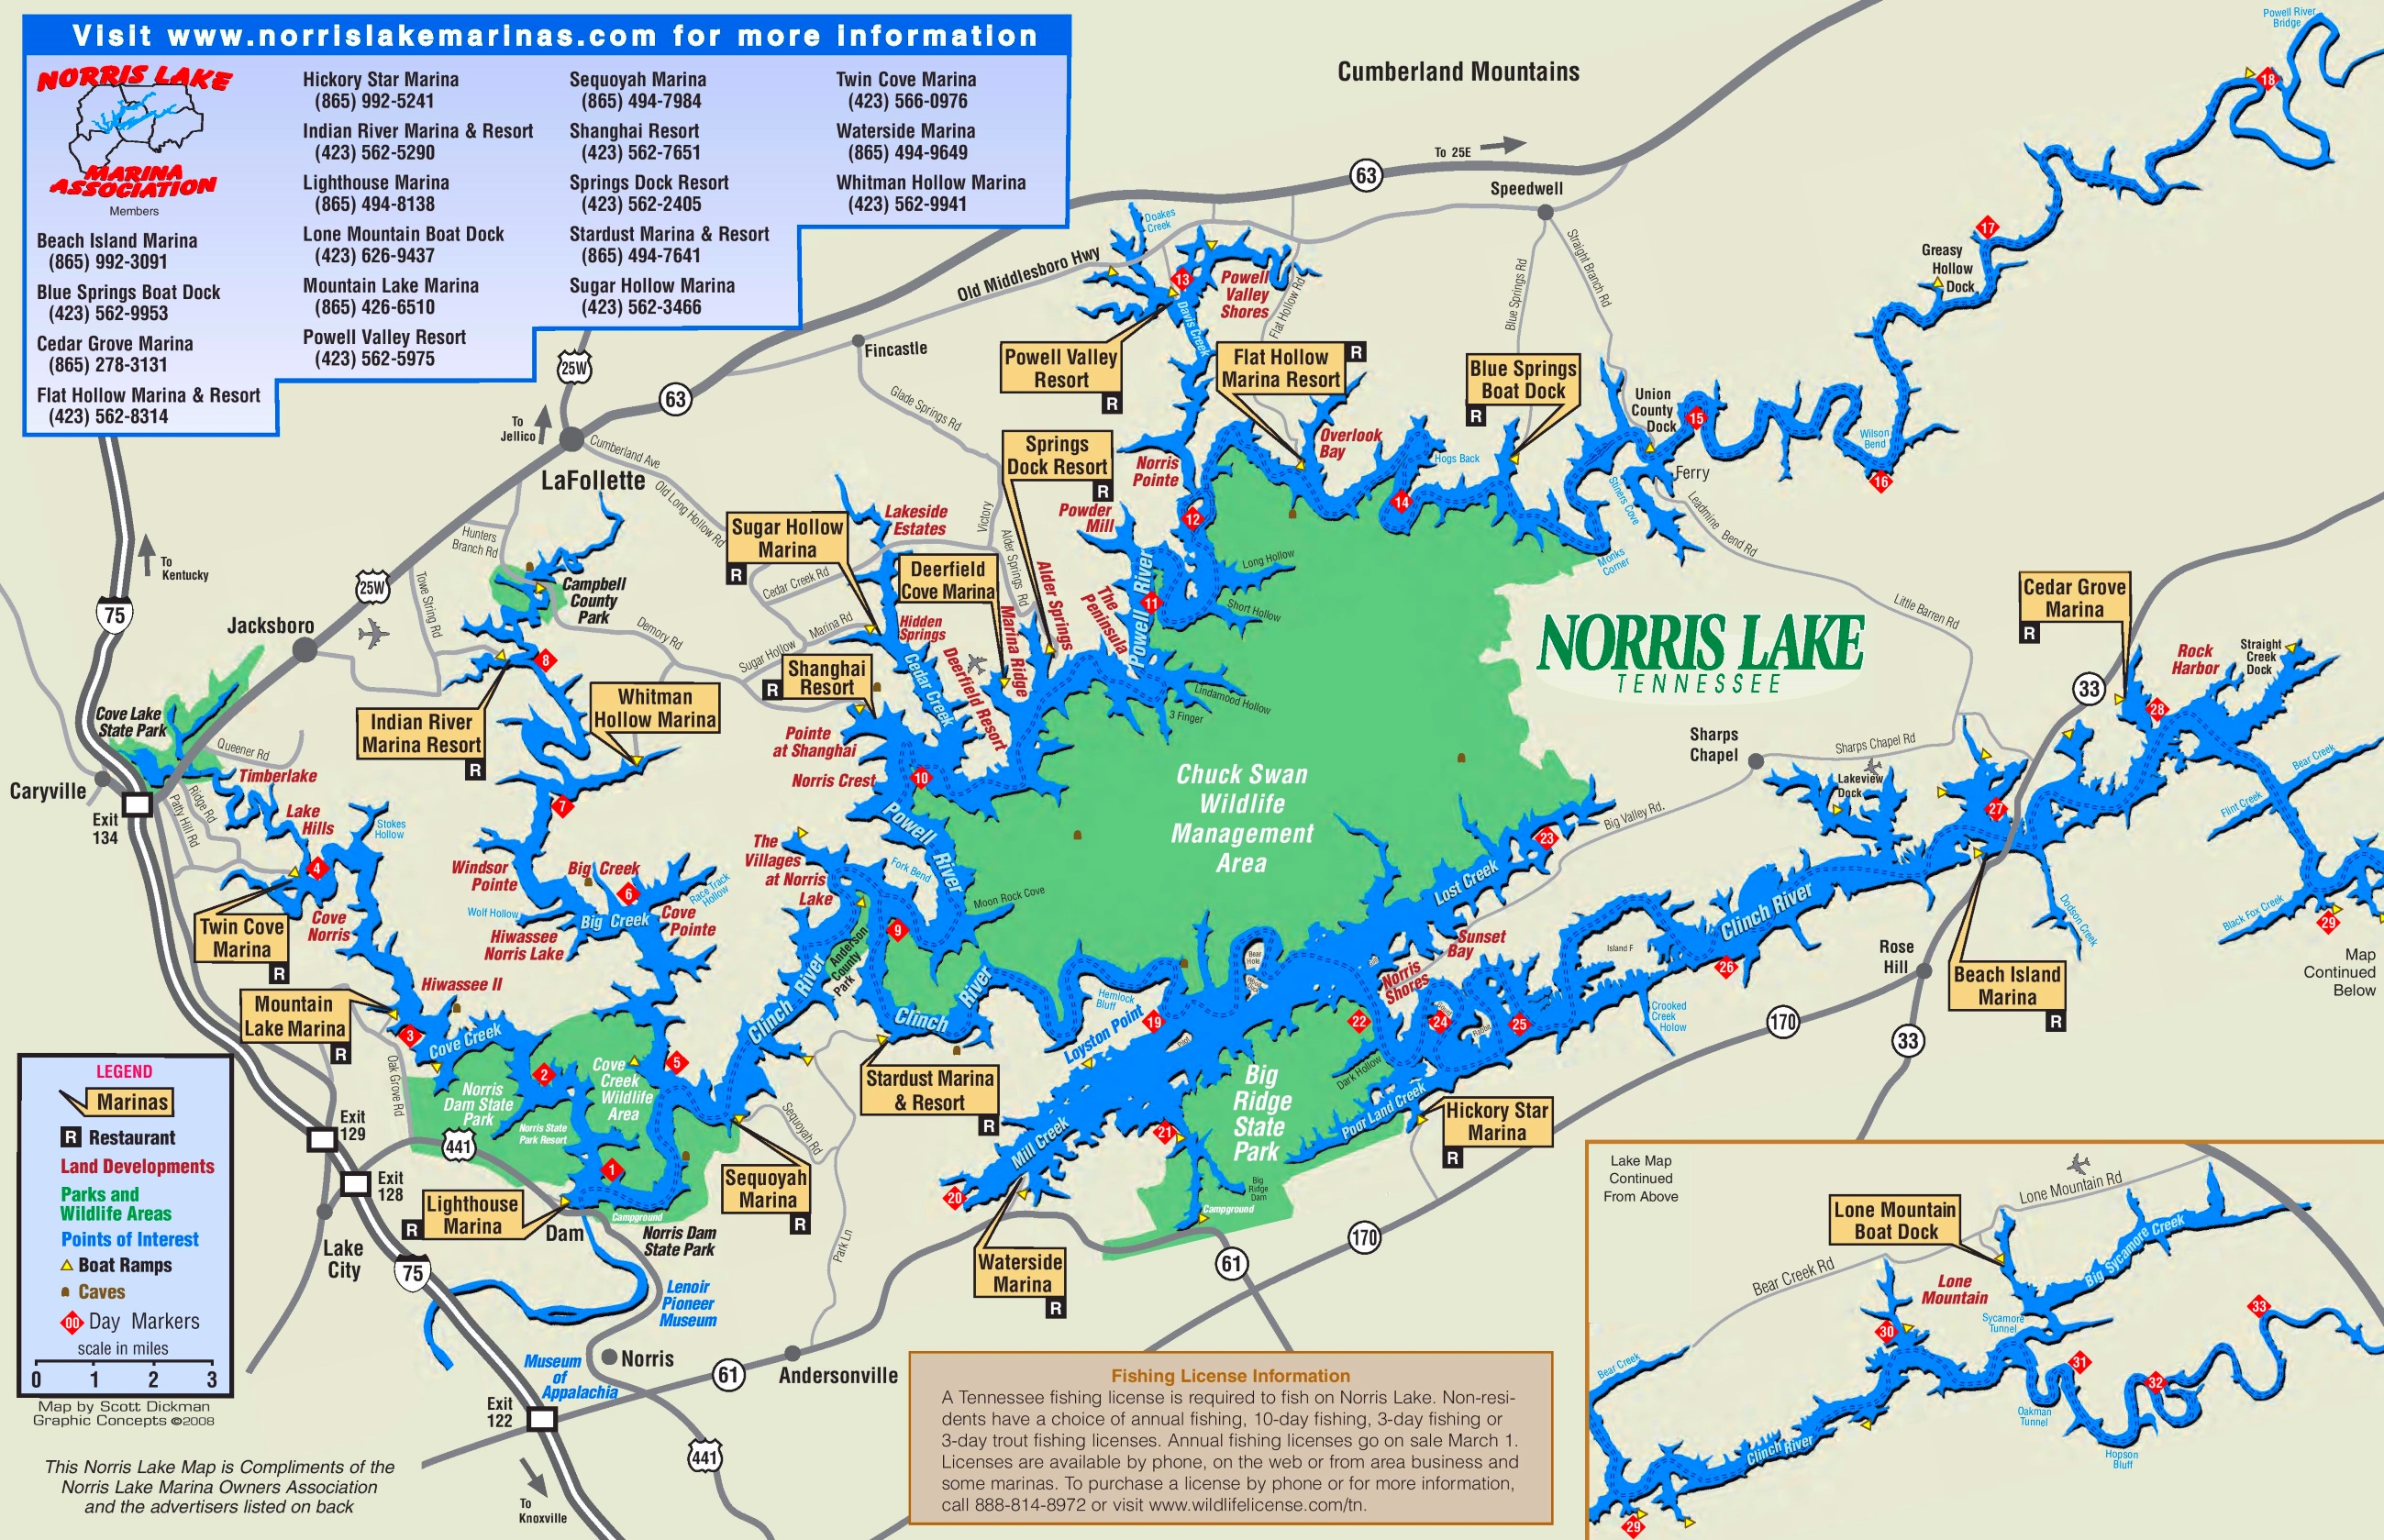 Dale hollow lake marinas map